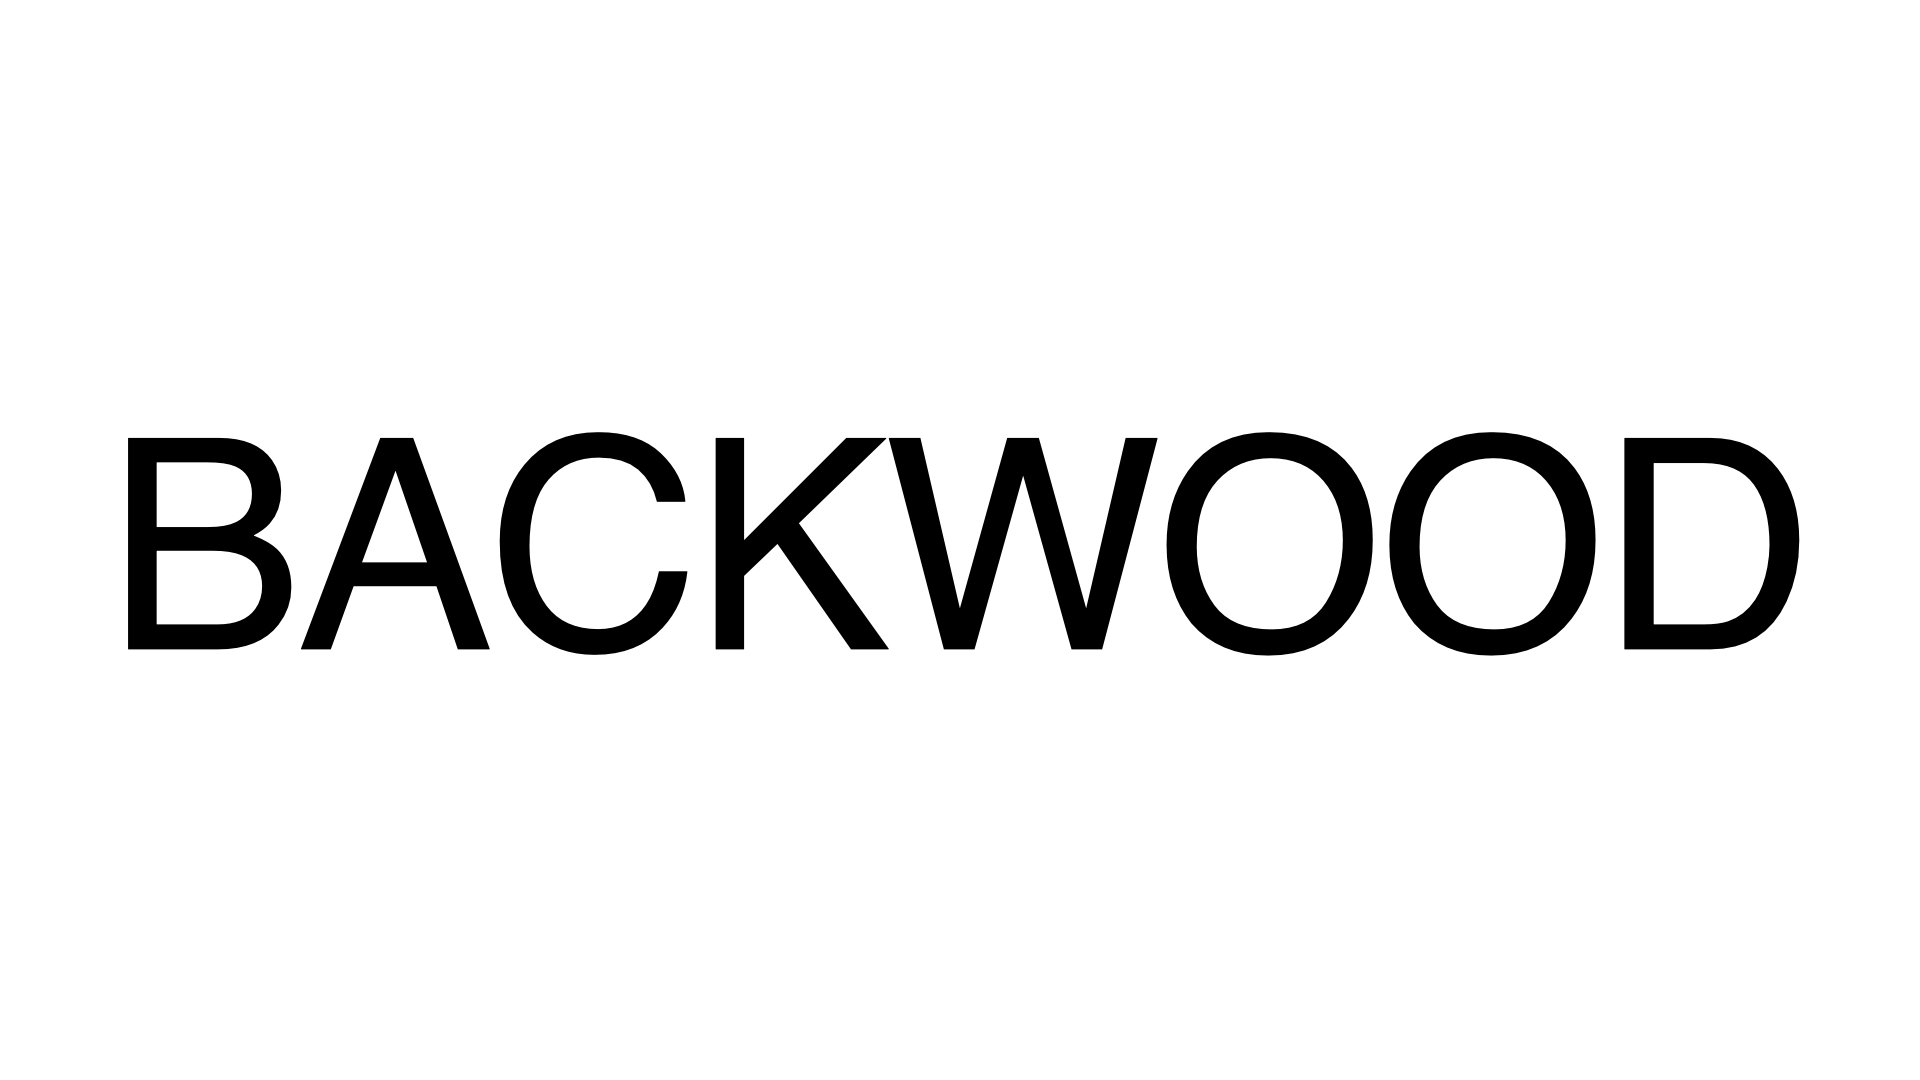 BACKWOOD